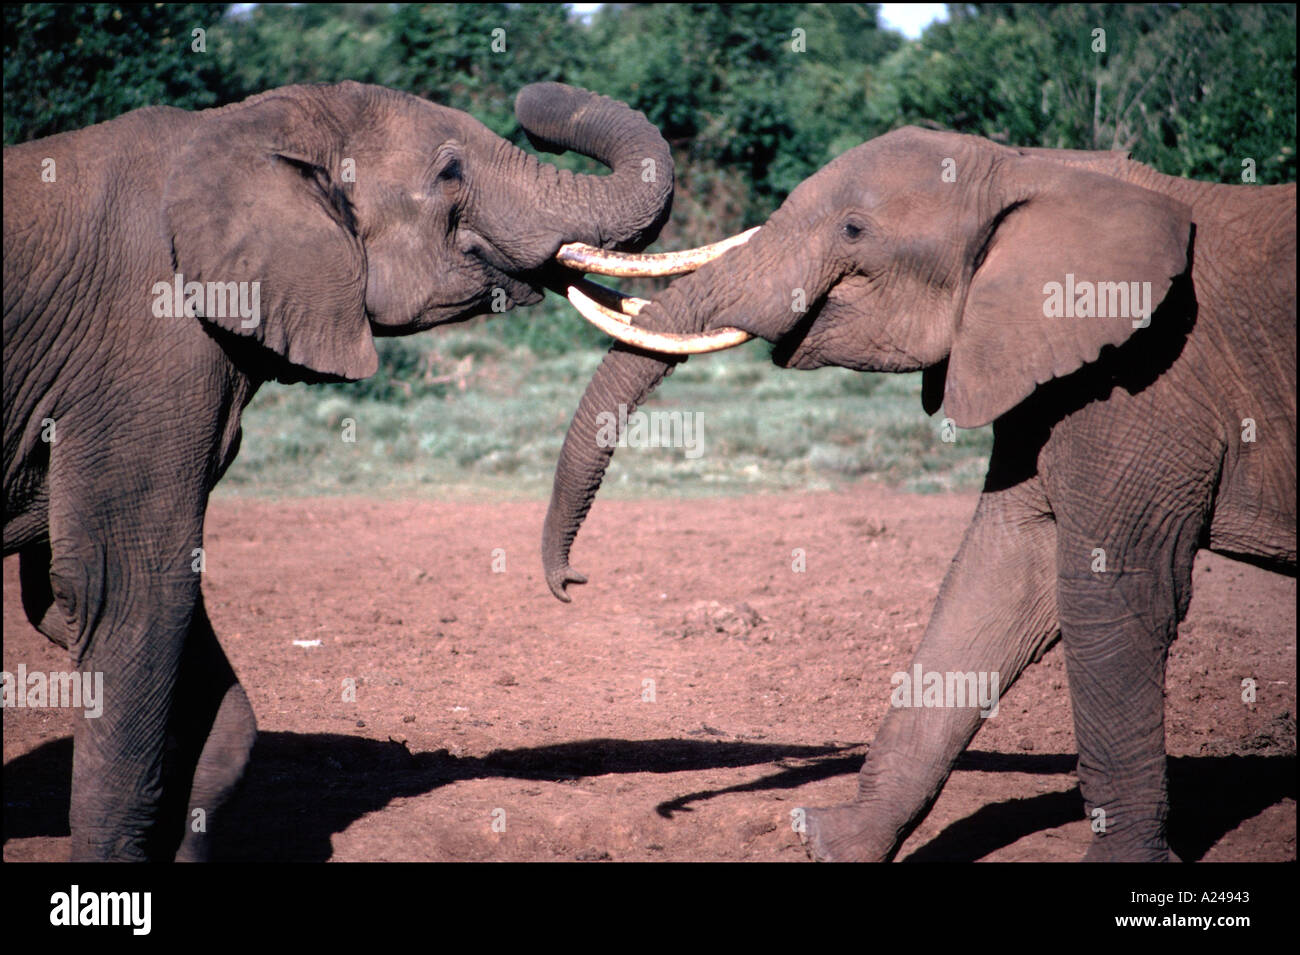 AFRICAN ELEPHANTS PLAYING LOXODONTA AFRICANA ABERDARE NATIONAL PARK KENYA Stock Photo